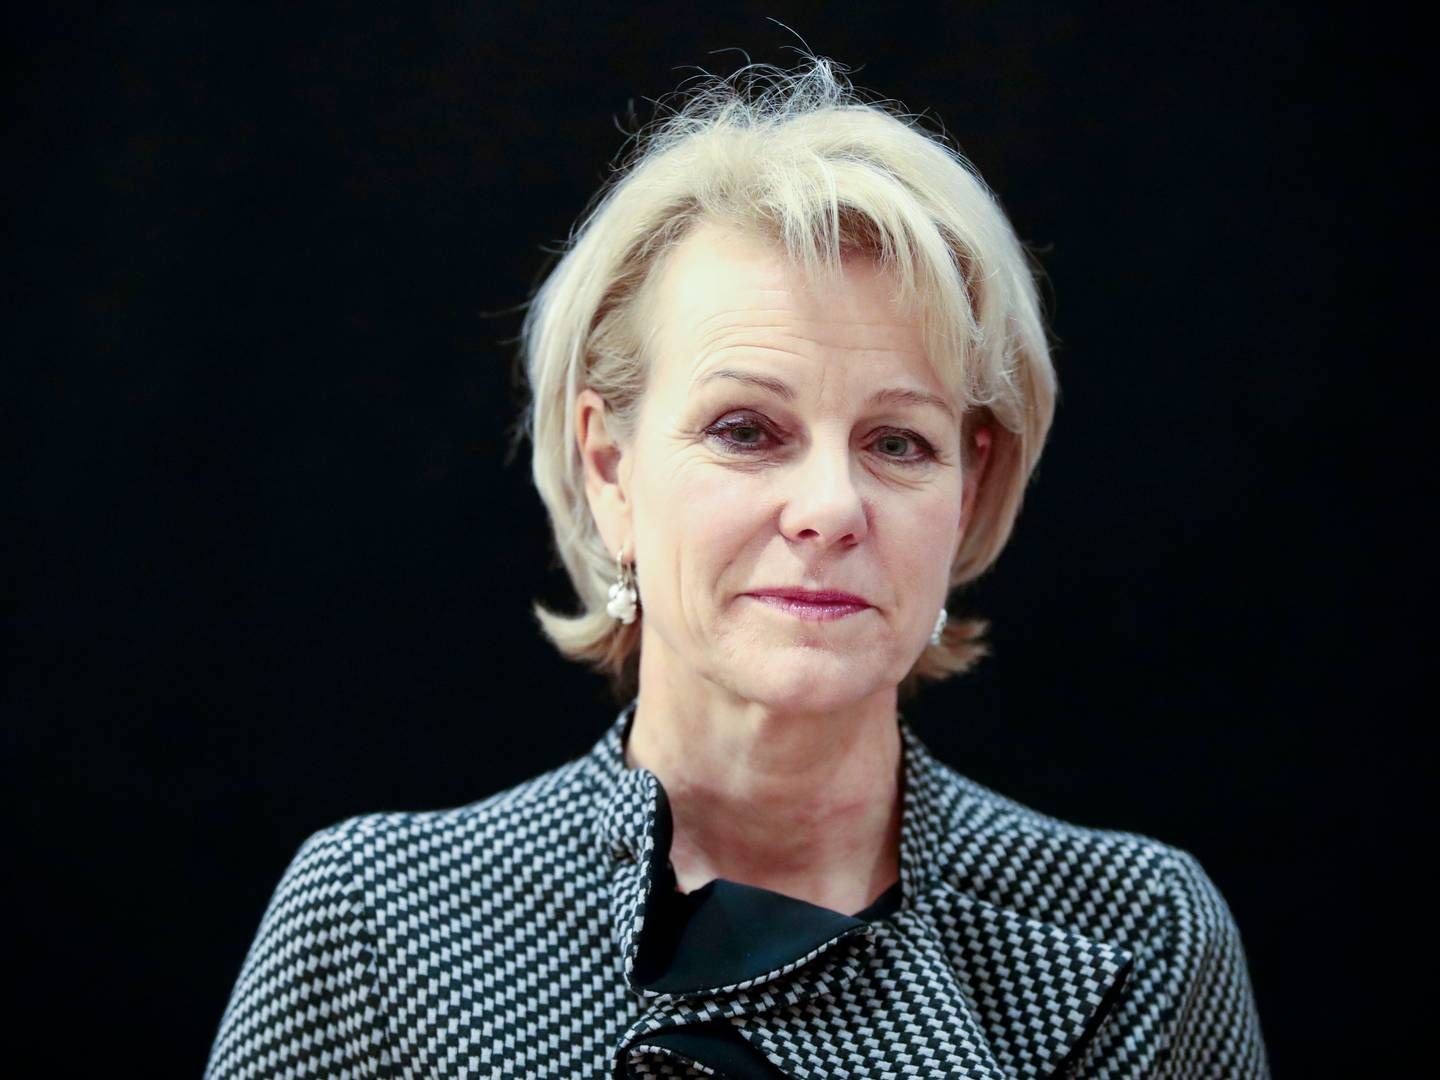 GENERALSEKRETÆR: Merete Smith er generalsekretær i Advokatforeningen, som står bak undersøkelsen. | Foto: Lise Åserud / NTB